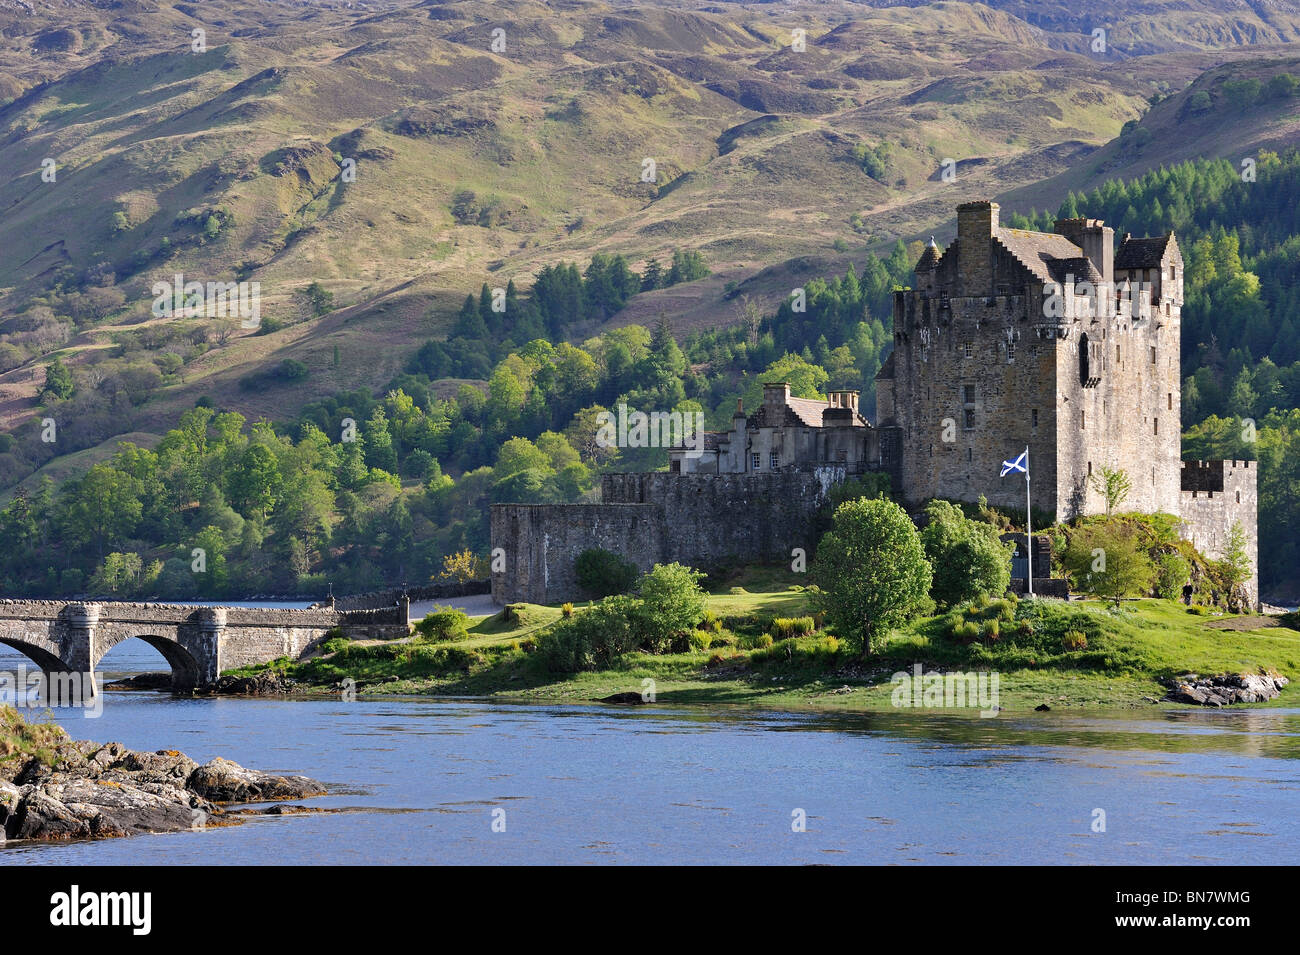 Le Château d'Eilean Donan dans le Loch Duich dans les hautes terres de l'ouest de l'Ecosse, Royaume-Uni Banque D'Images